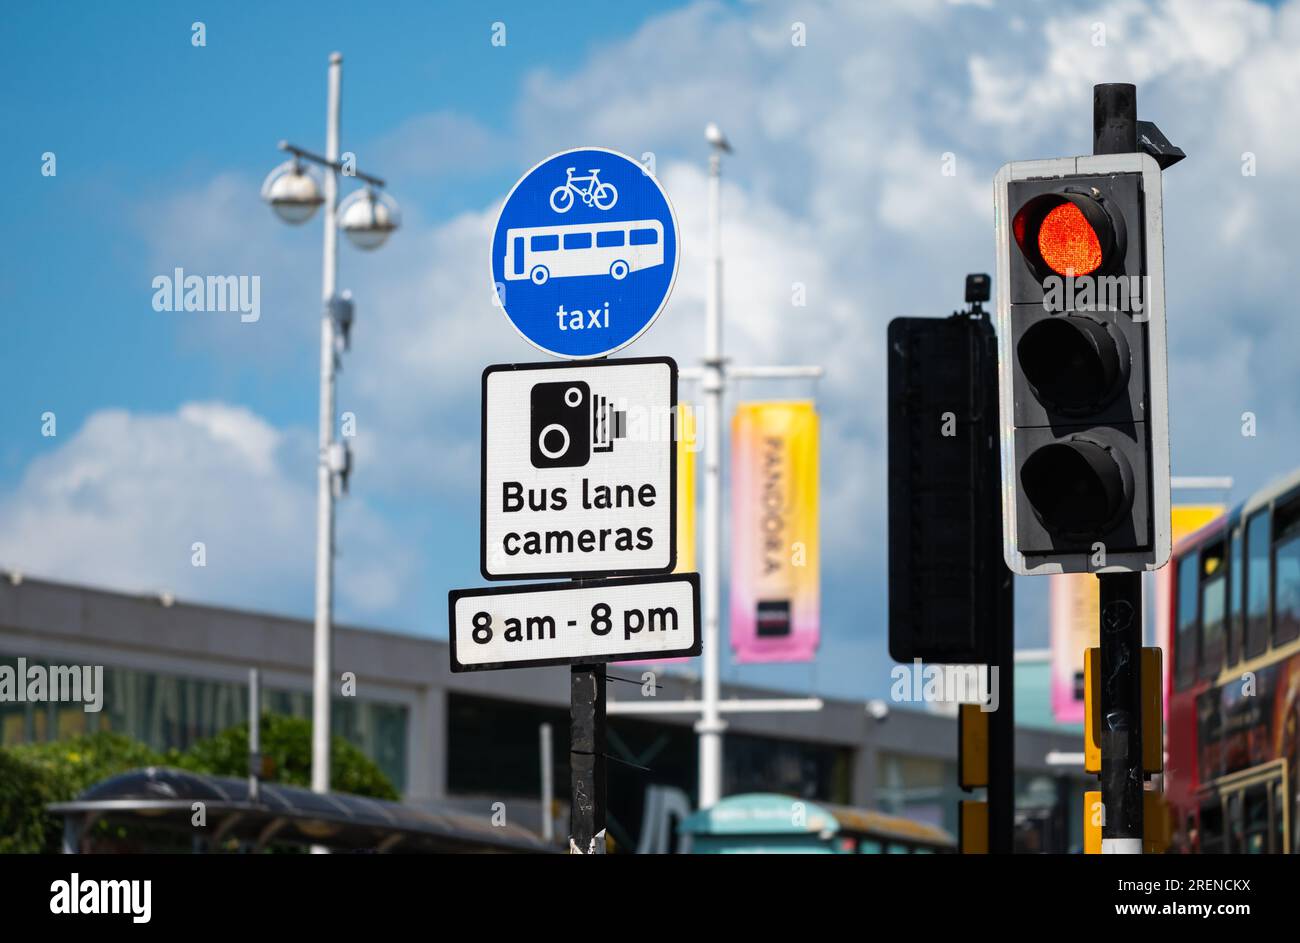 Cartelli e semafori all'incrocio stradale, che mostrano la corsia degli autobus, la pista ciclabile, la corsia dei taxi, l'avviso di telecamere della corsia degli autobus, a Brighton & Hove, Inghilterra, Regno Unito. Foto Stock